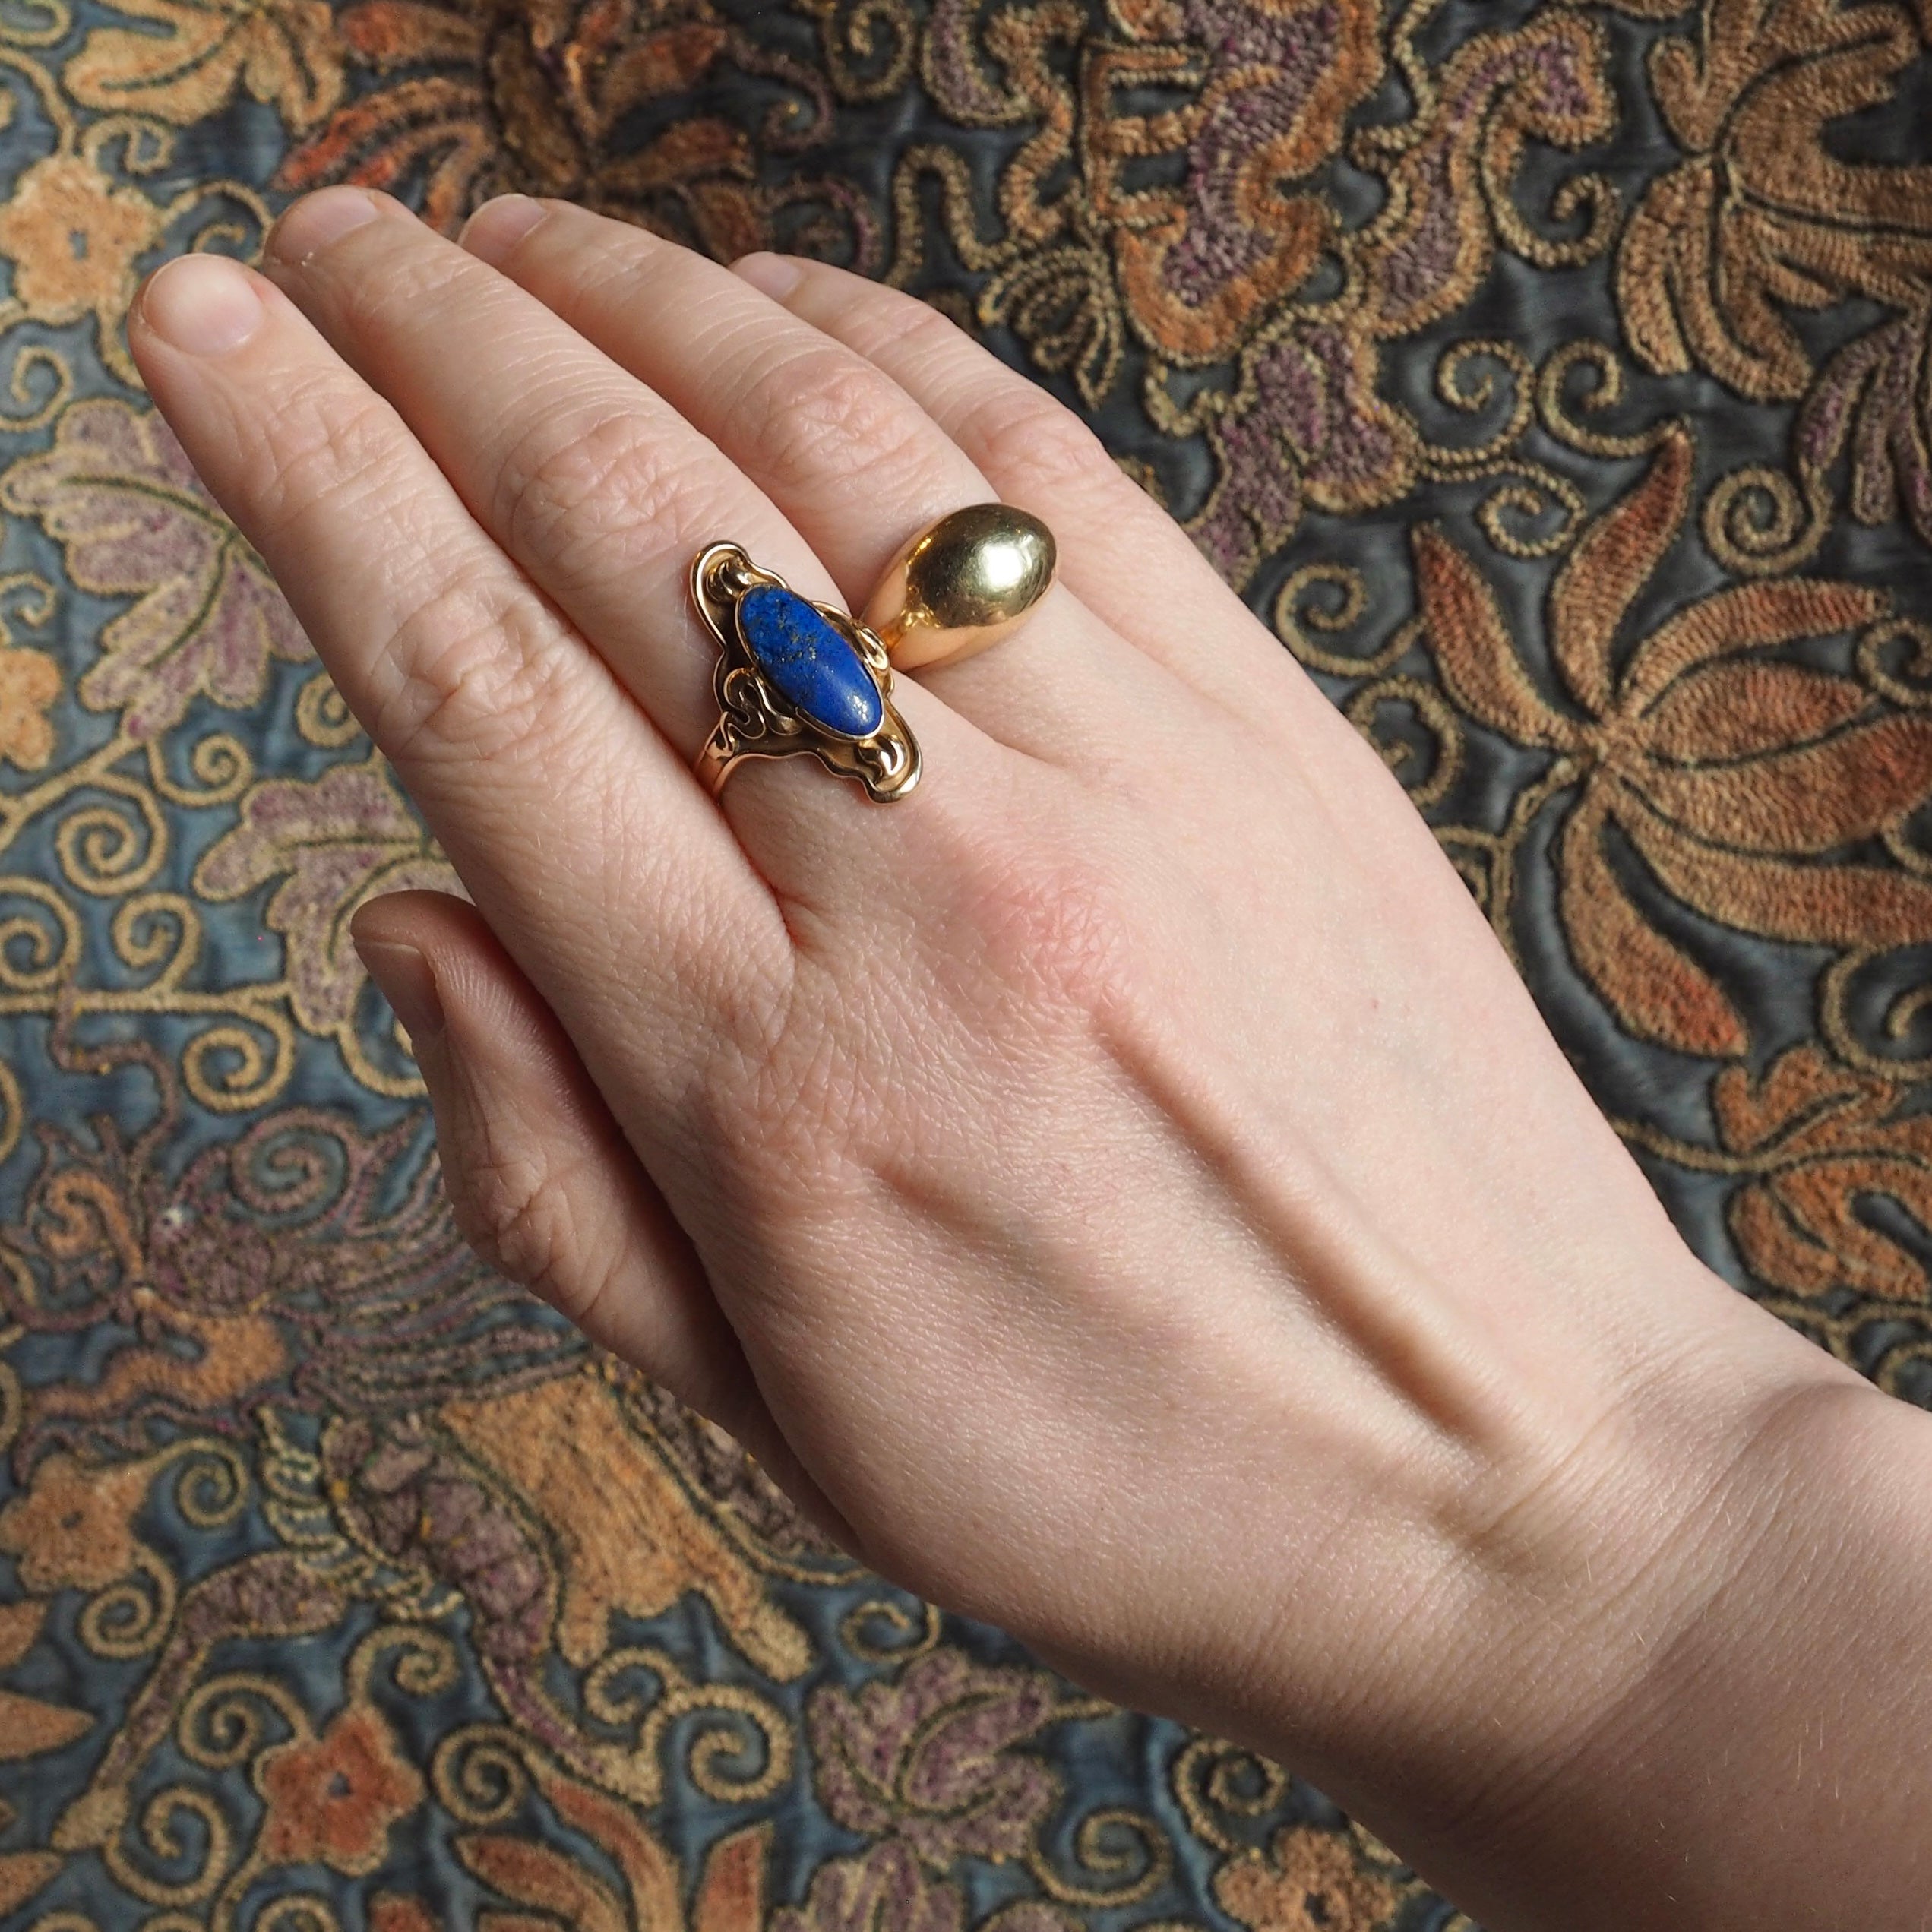 Antique Art Nouveau 14k Gold Lapis Ring